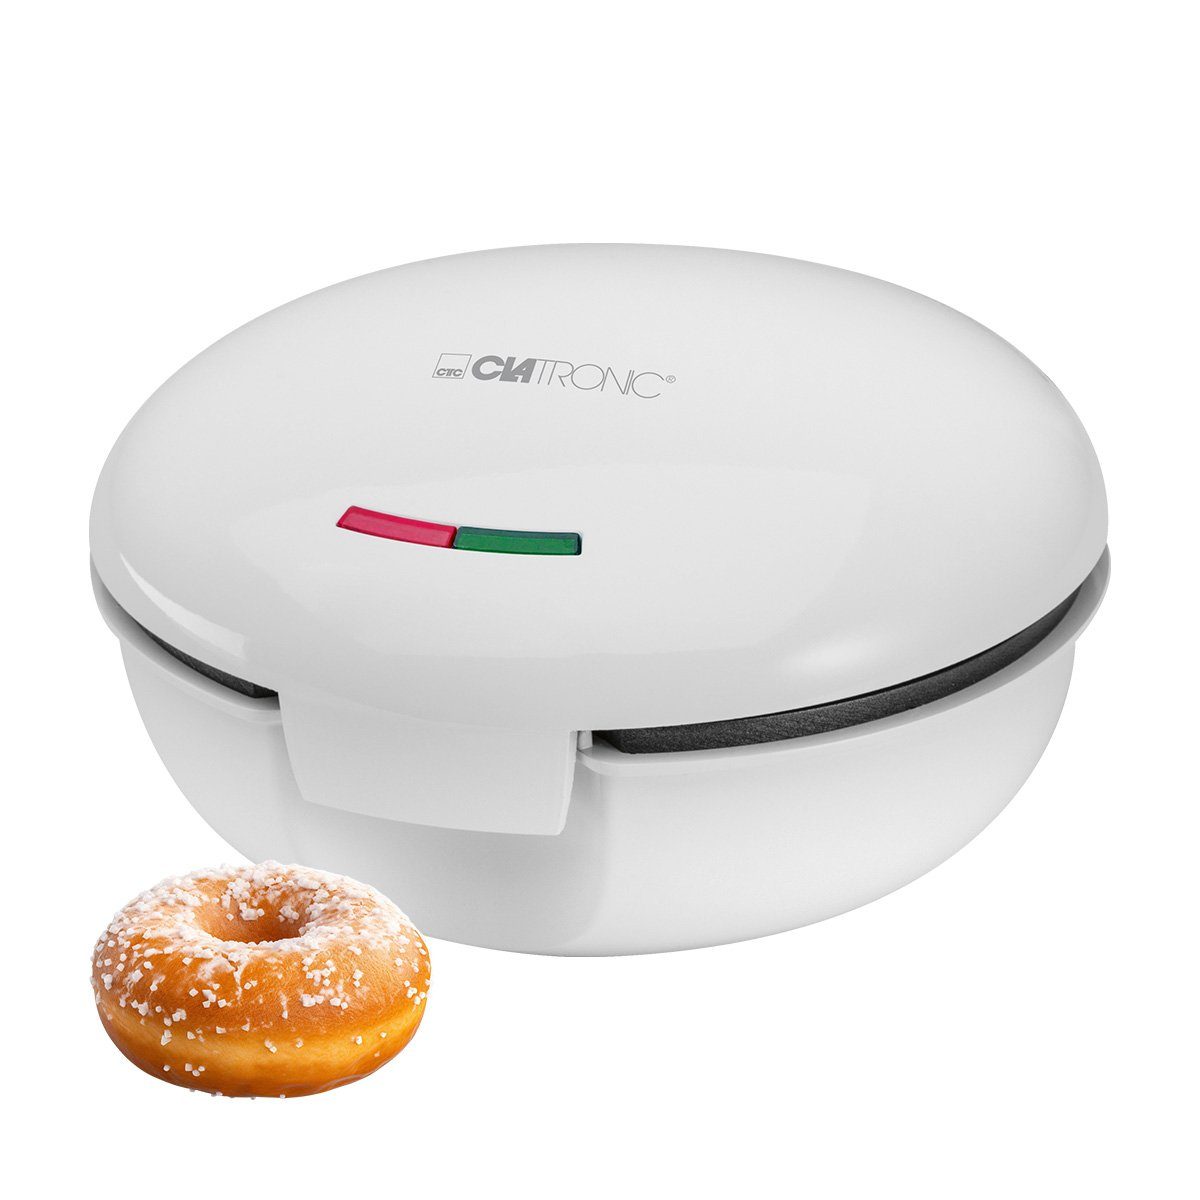 CLATRONIC W 900 Donut-Maker DM 3495,